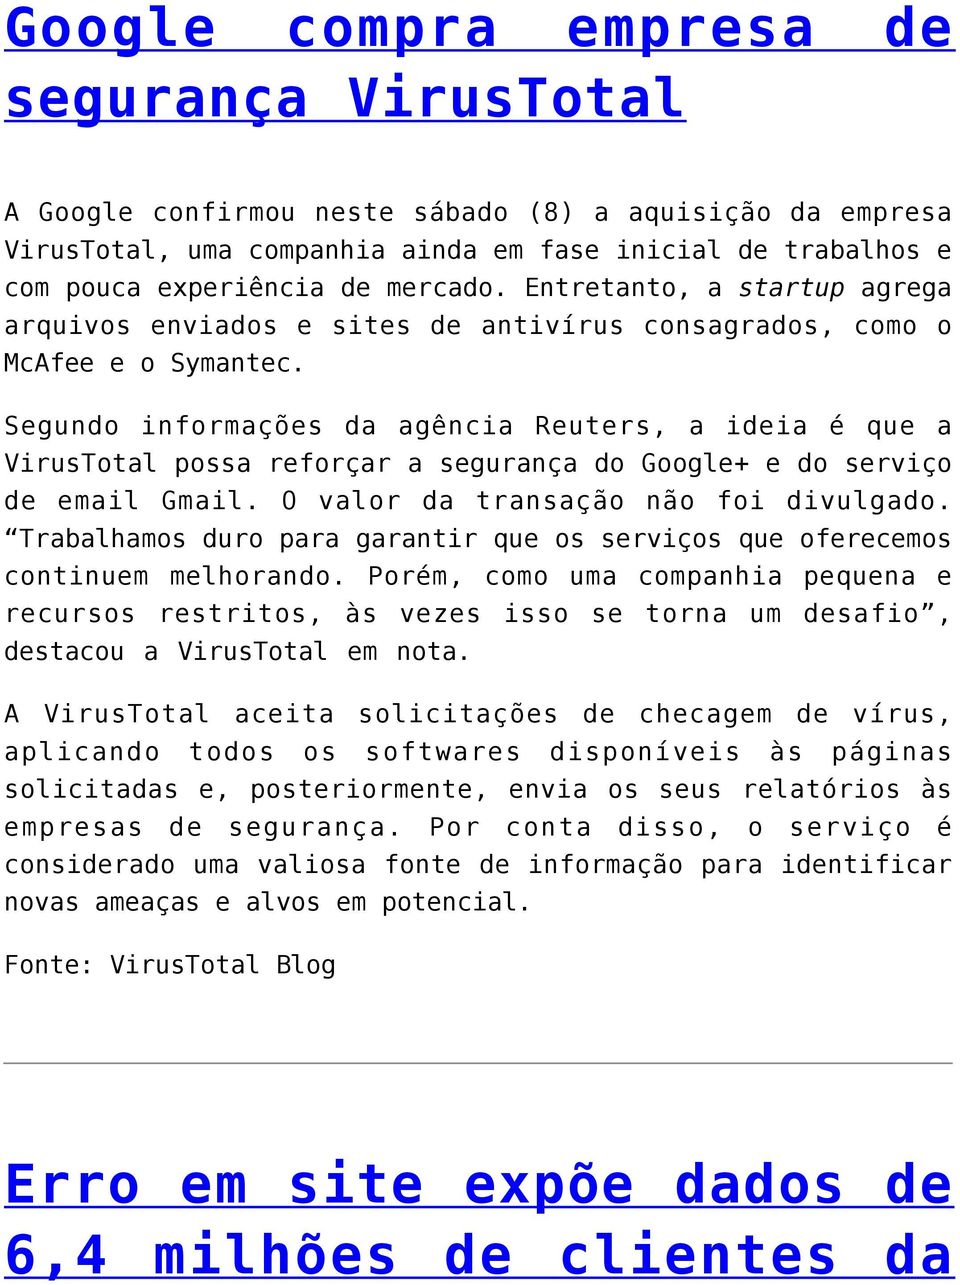 Segundo informações da agência Reuters, a ideia é que a VirusTotal possa reforçar a segurança do Google+ e do serviço de email Gmail. O valor da transação não foi divulgado.